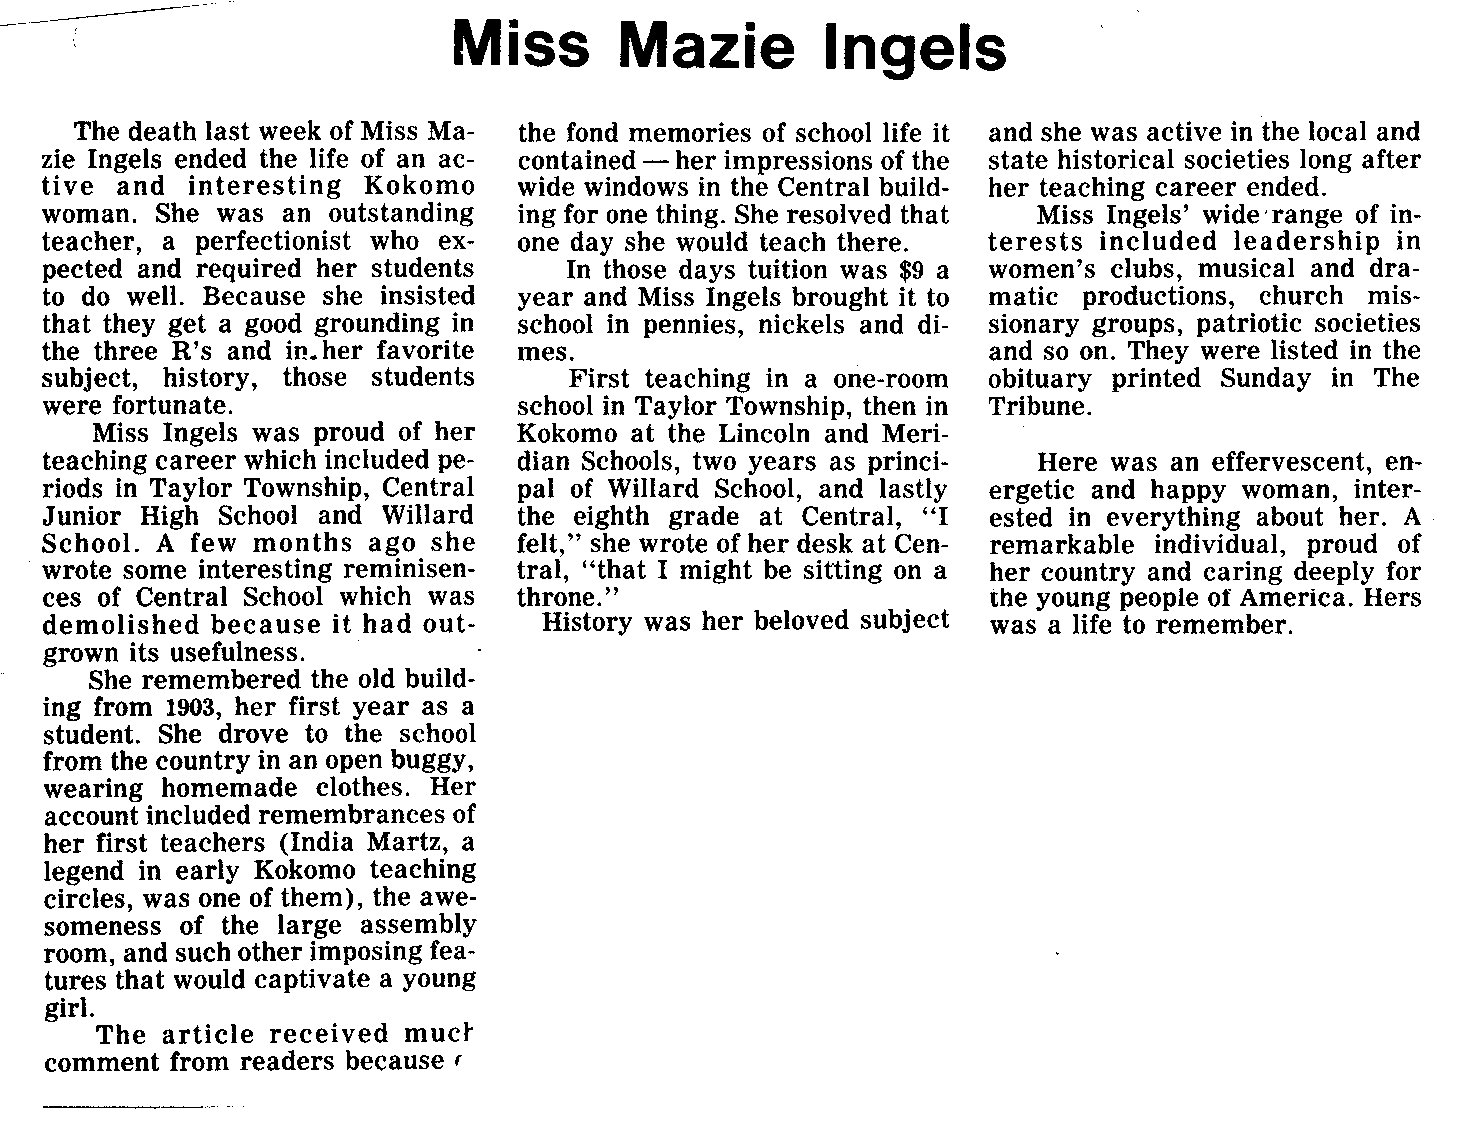 Ingels, Mazie